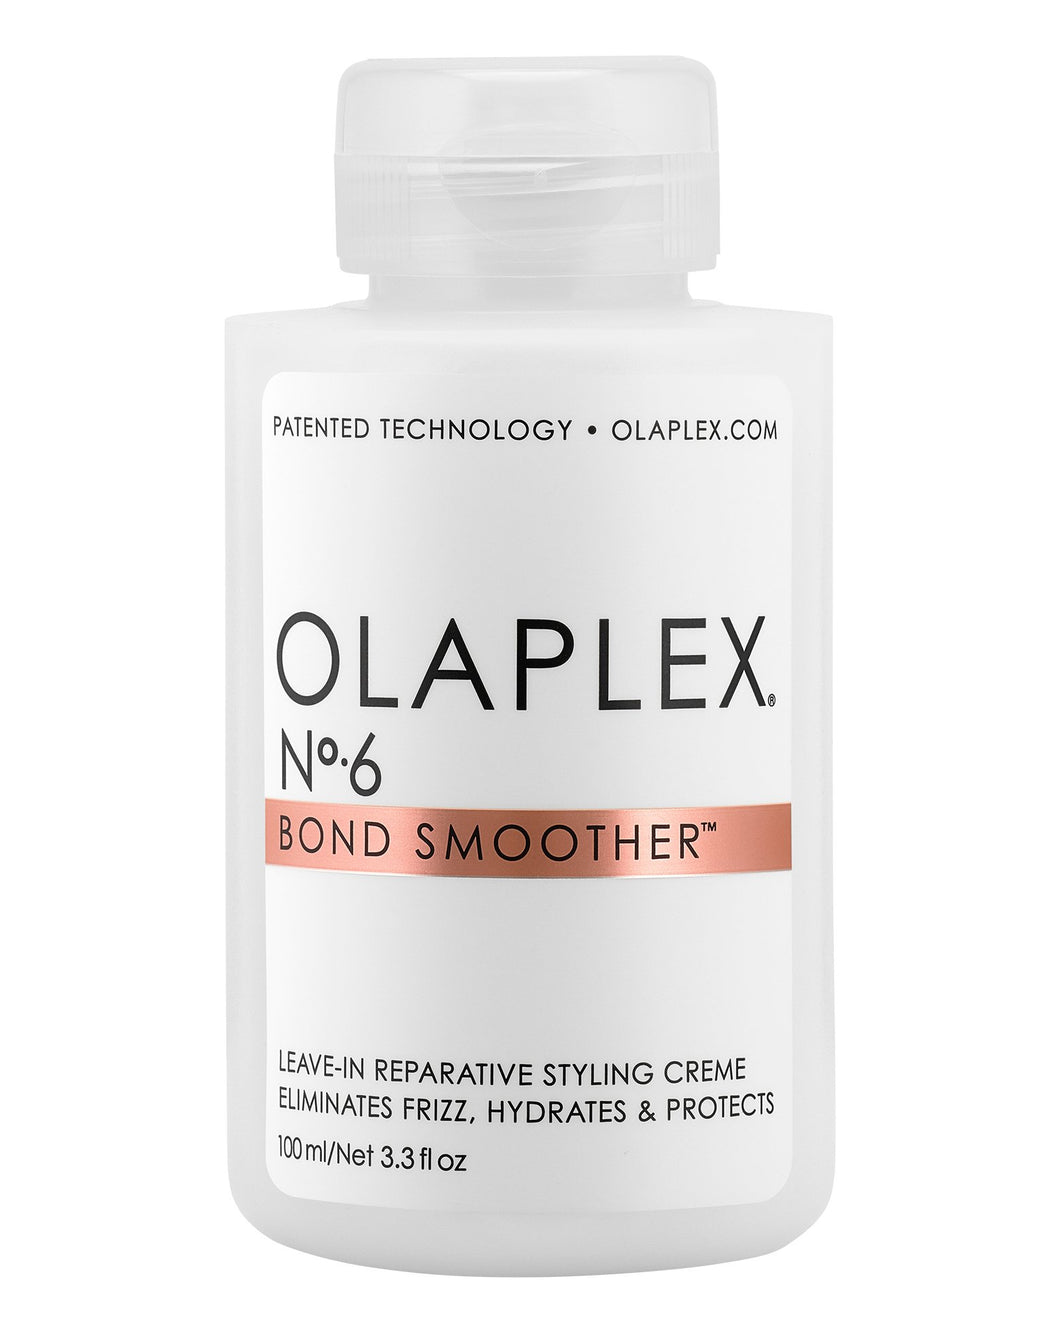 OLAPLEX NO. 6 SMOOTHER BOND